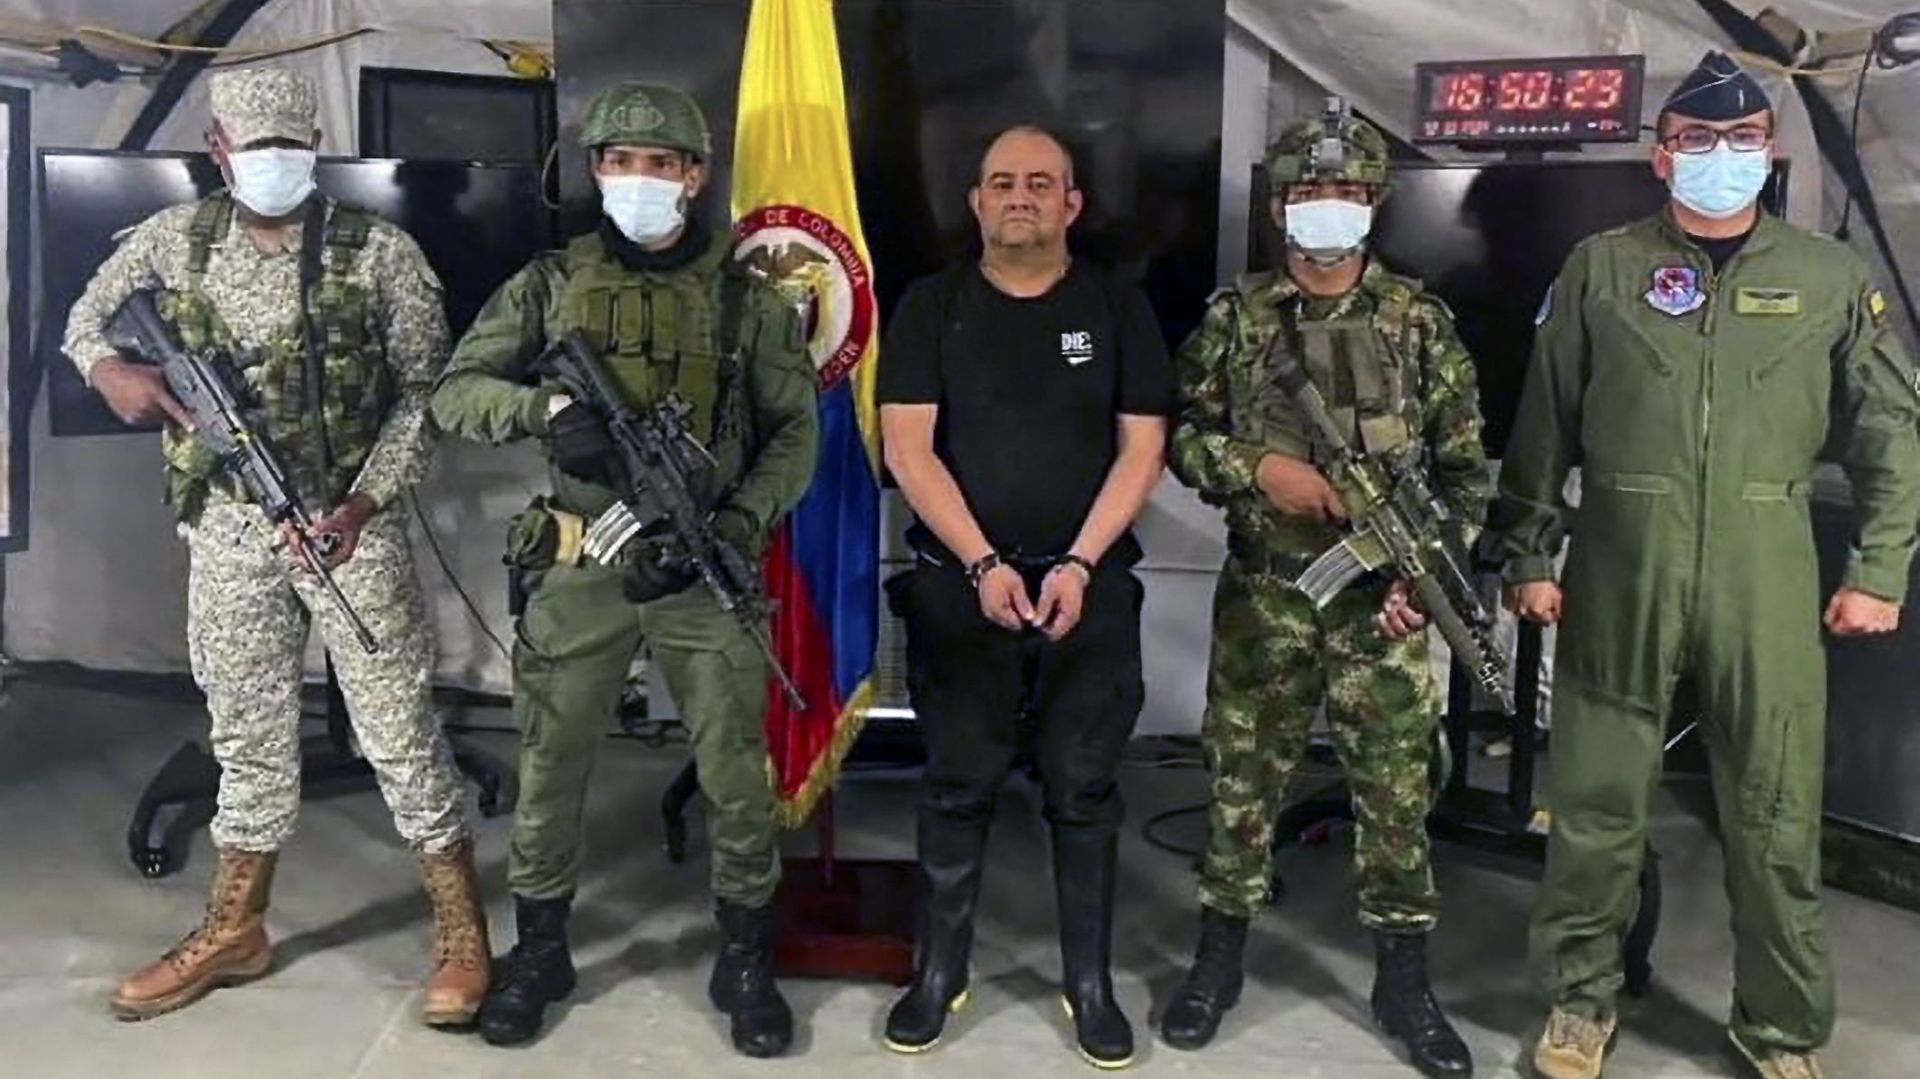 Arrestation du baron de la drogue "Otoniel" : la Colombie prépare son extradition vers les Etats-Unis